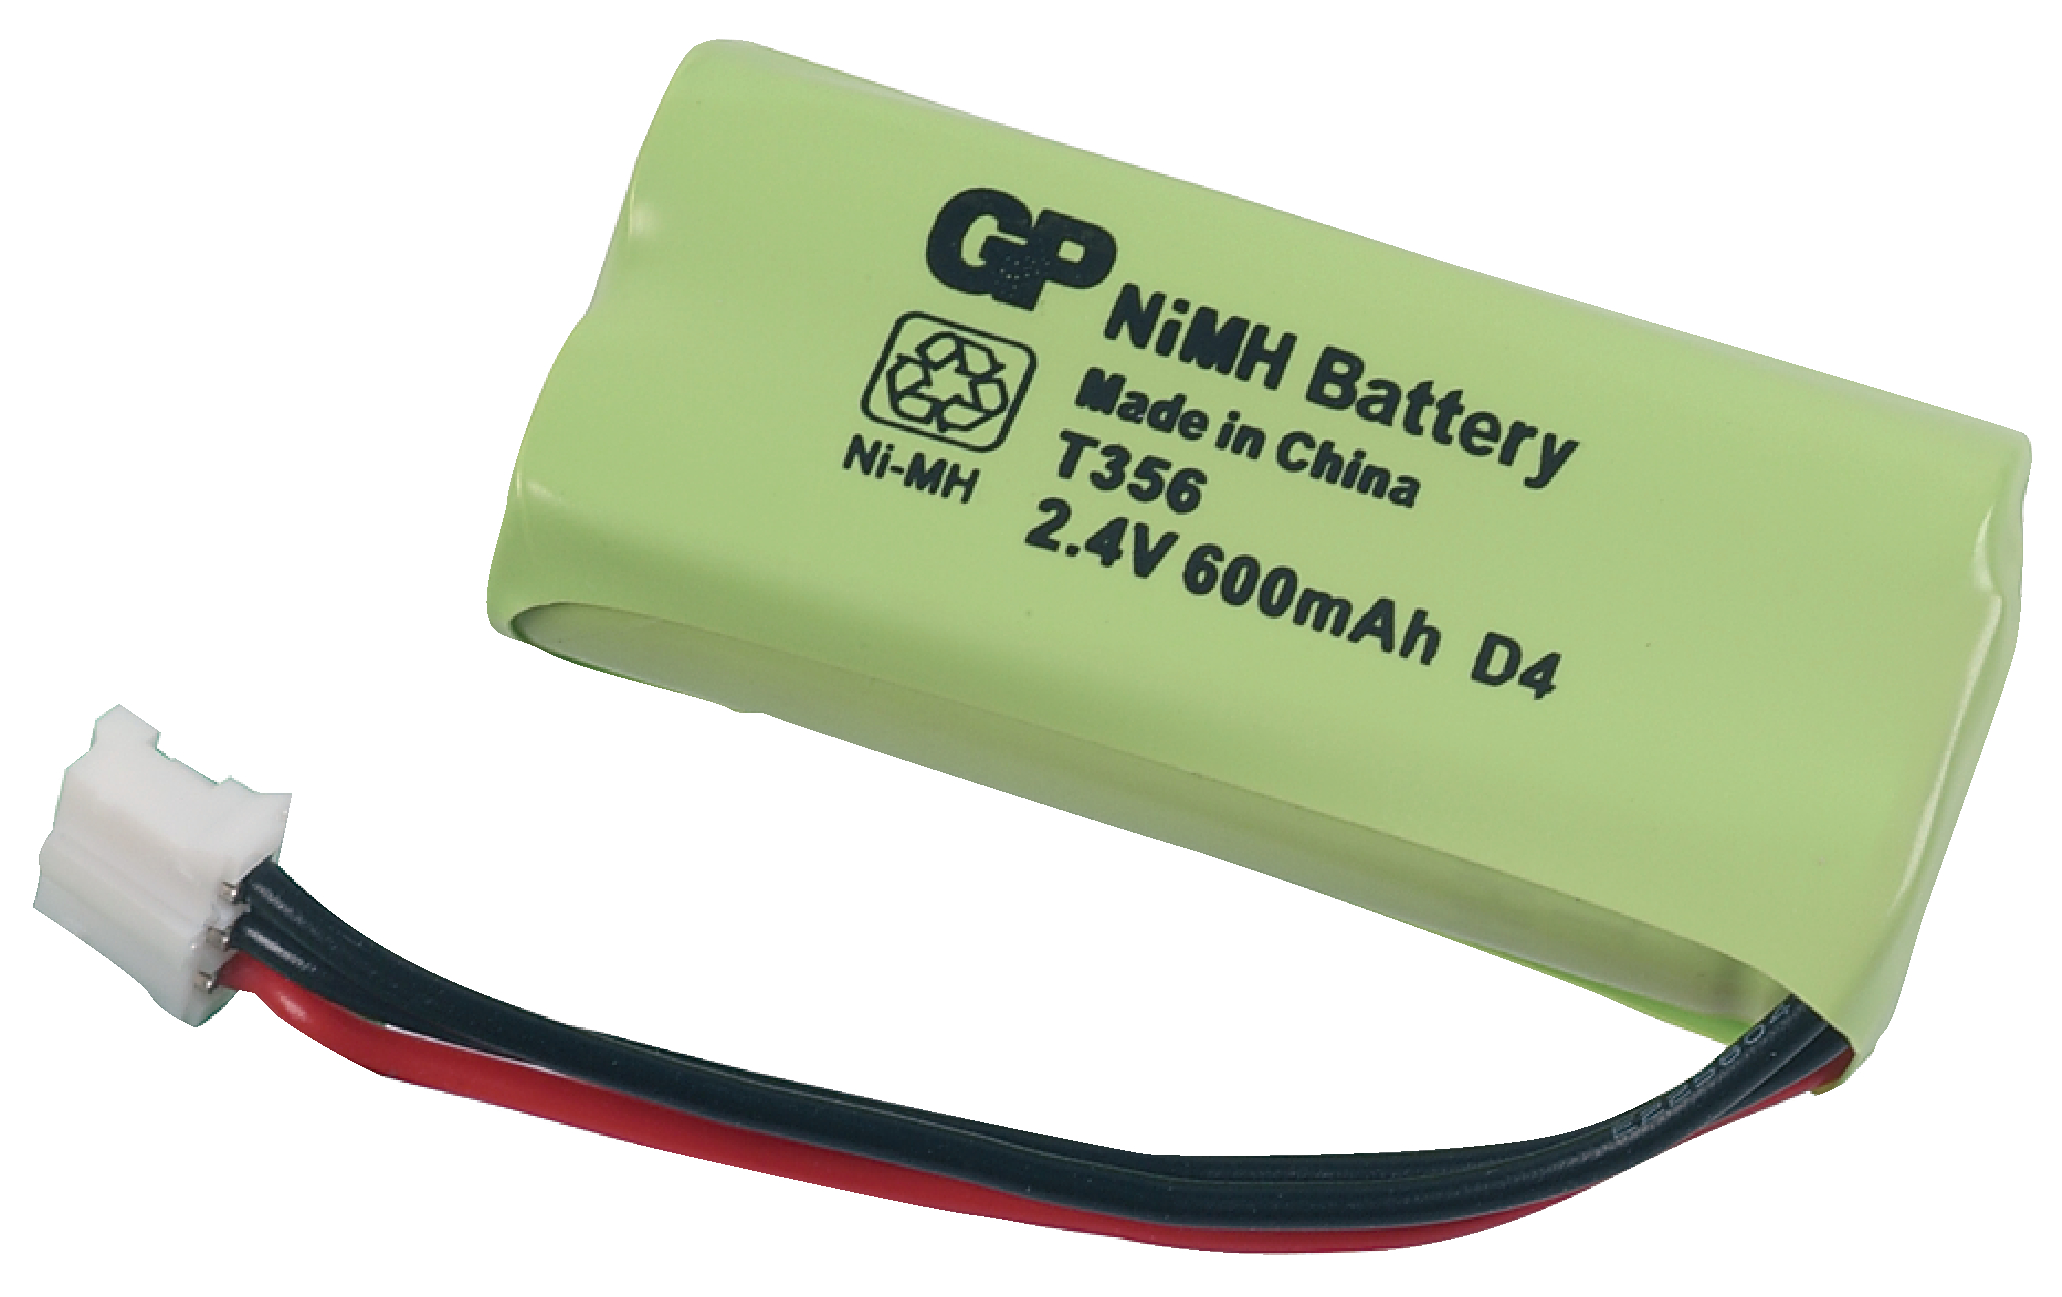 Fc 2 4 battery set. 2.4V 600mah аккумулятор. Аккумулятор GP NIMH Battery для радиотелефона. Аккумулятор для радиотелефона 2.4 v. Аккумулятор t-356 2.4v 800mah Robiton.